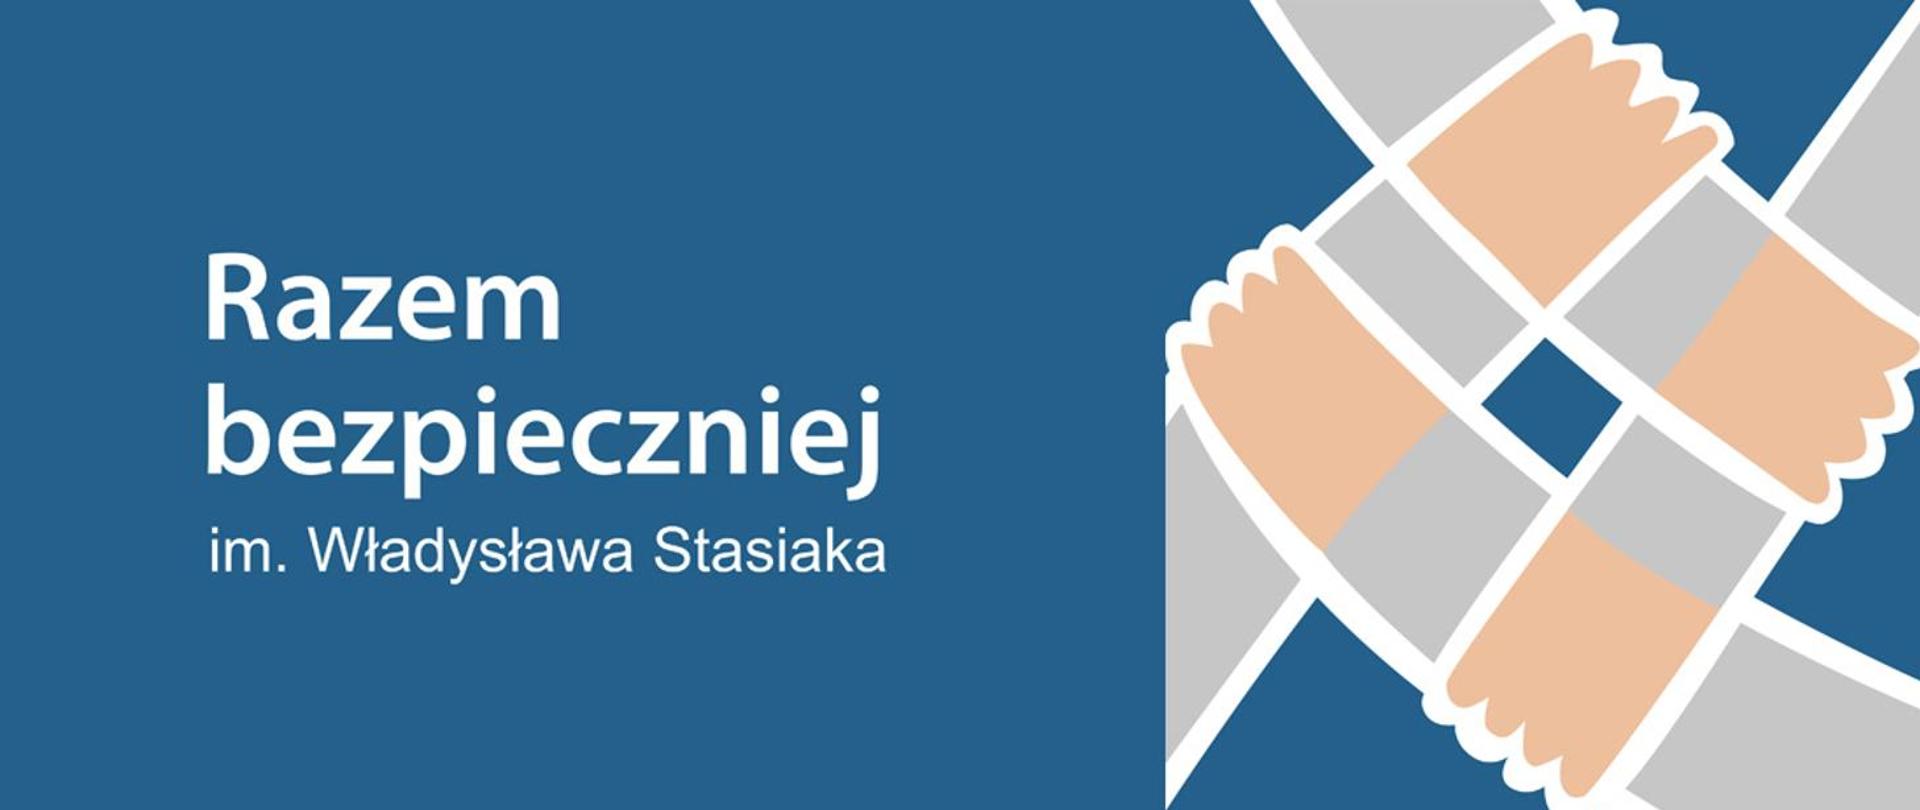 Rządowy Program ograniczania przestępczości i aspołecznych zachowań Razem bezpieczniej im. Władysława Stasiaka na lata 2022 - 2024